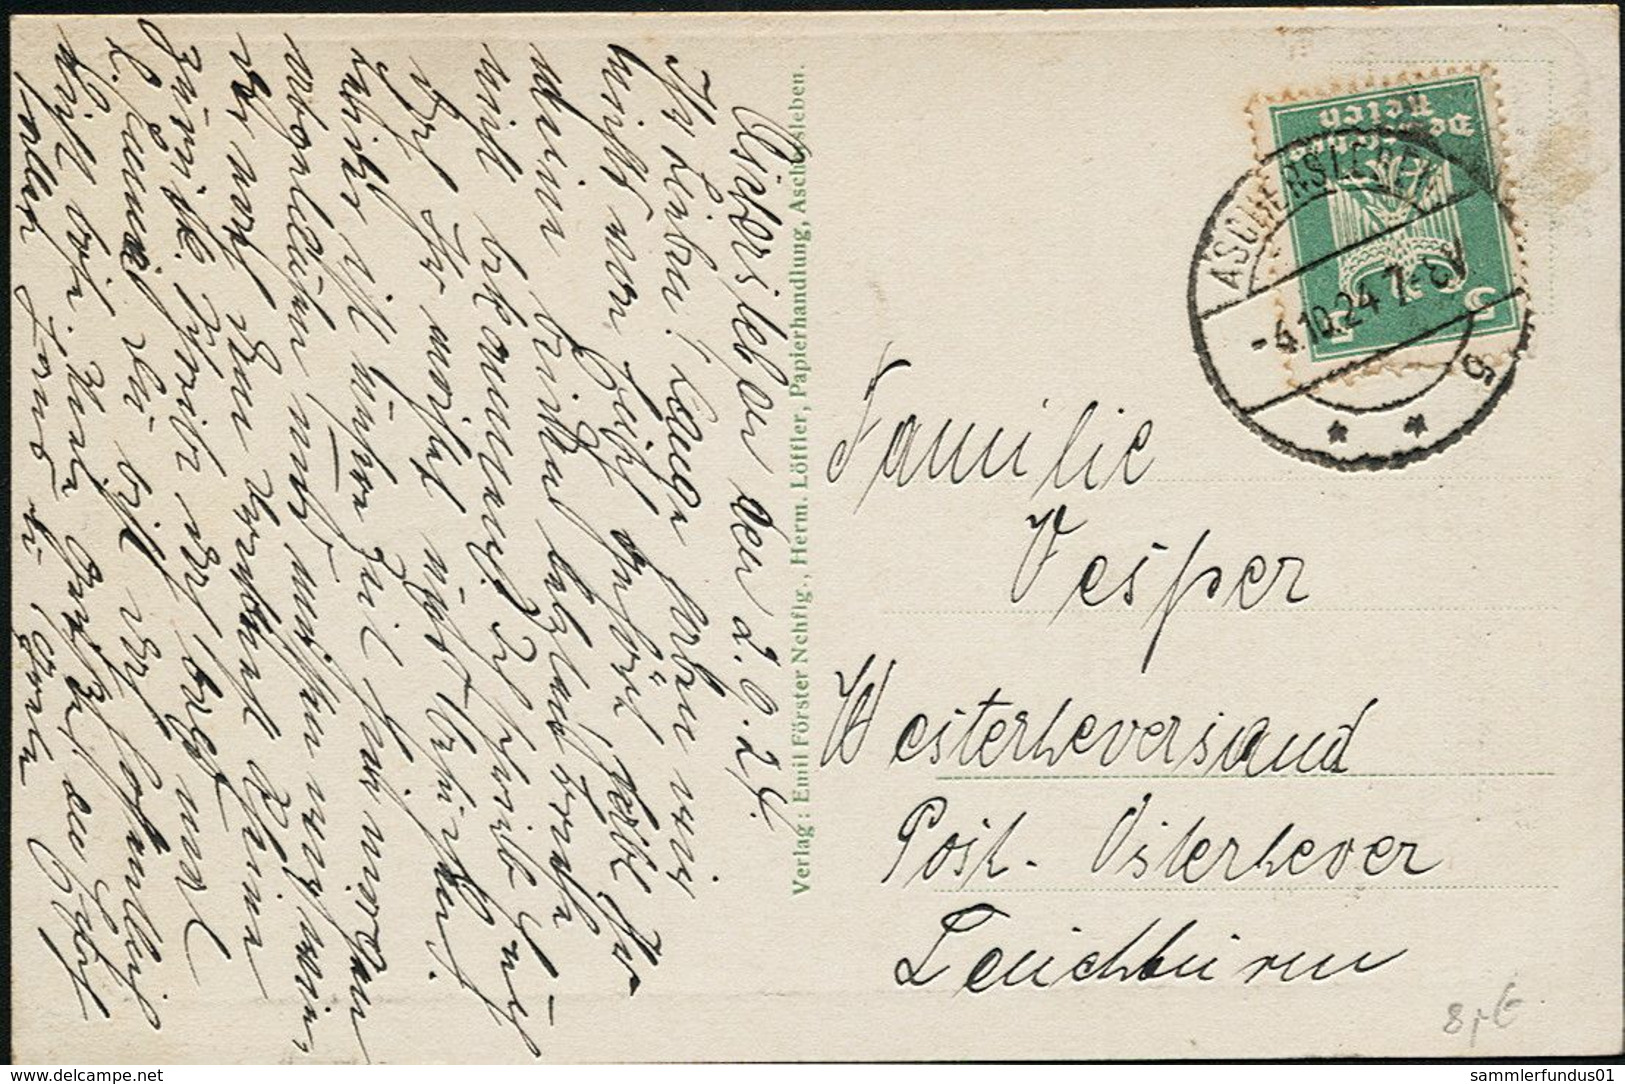 AK/CP Aschersleben  Postberg     Gel./circ. 1924   Erh./Cond.  2 ,    Nr. 01119 - Aschersleben